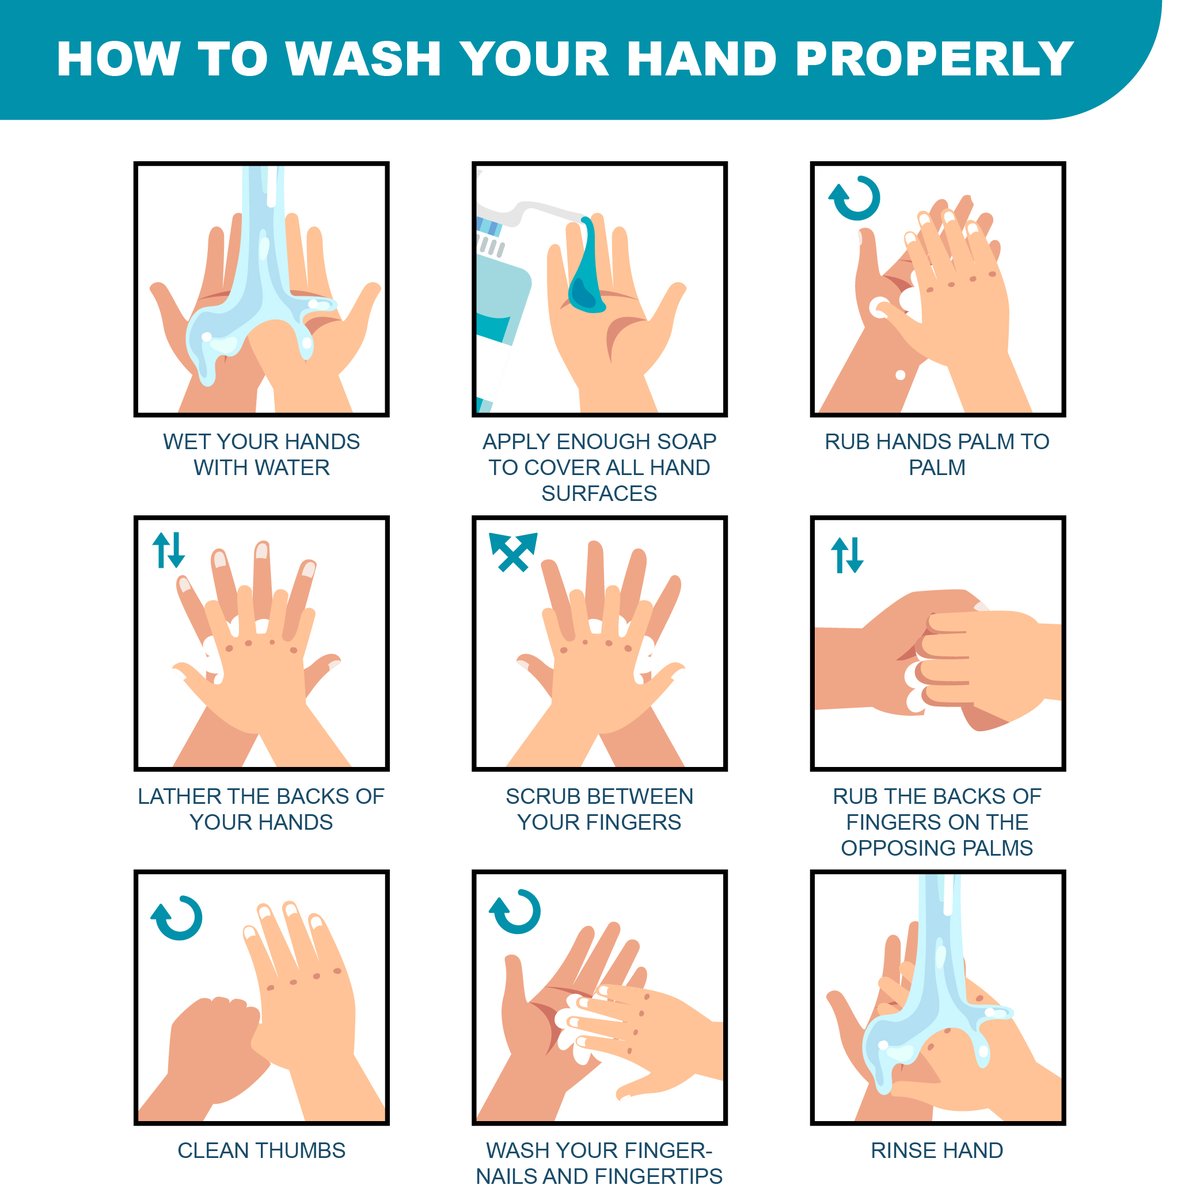 #HandHygieneDay #CleanHandsSaveLives #HygieneMatters #WashYourHands #HealthyHabits #InfectionPrevention #GlobalHandwashing #StaySafeWashHands #PreventInfections #HandHygieneAwarenes #BookMyTest